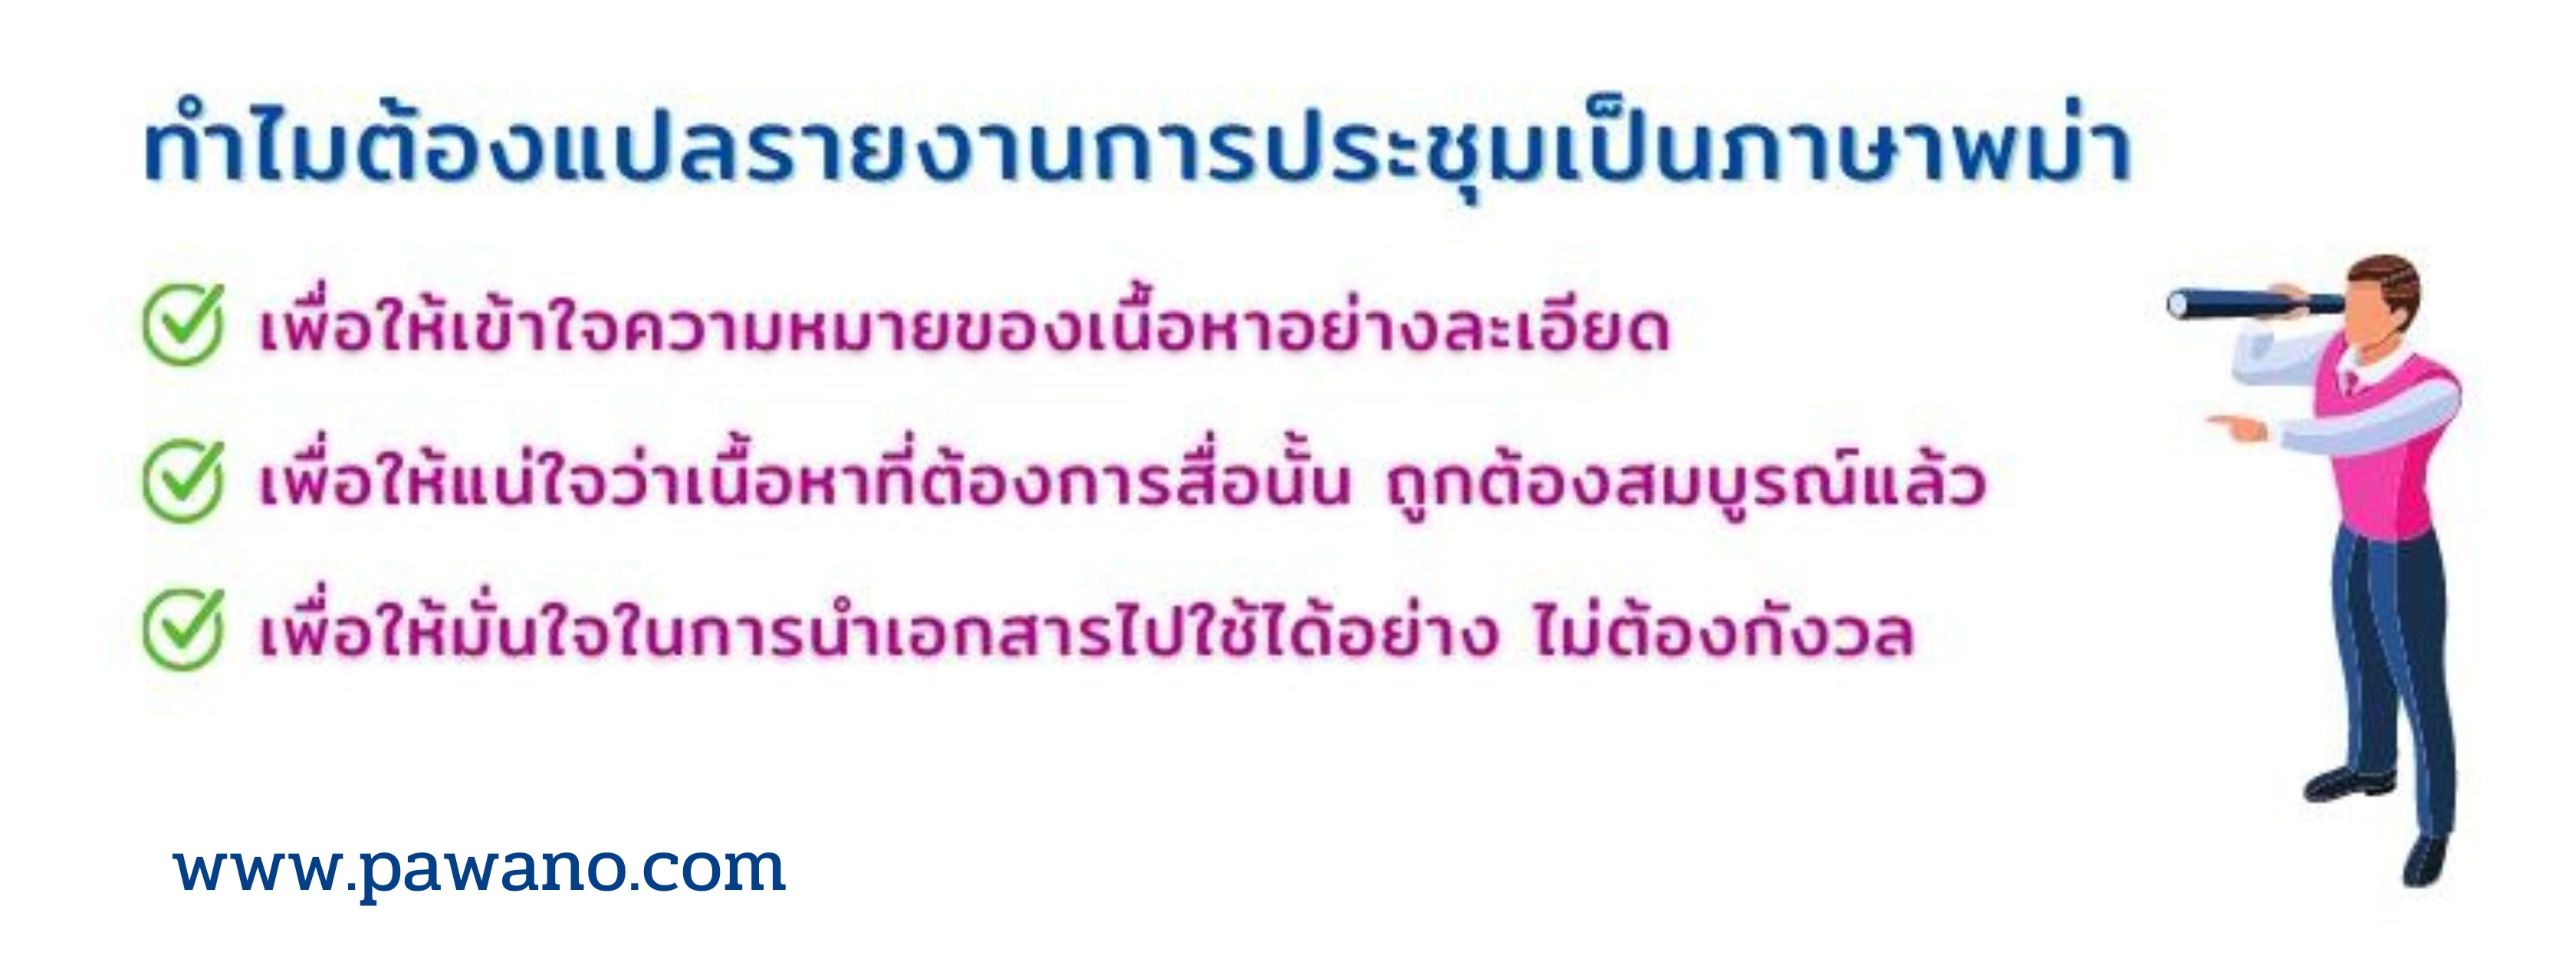 แปลรายงานการประชุมภาษาพม่า